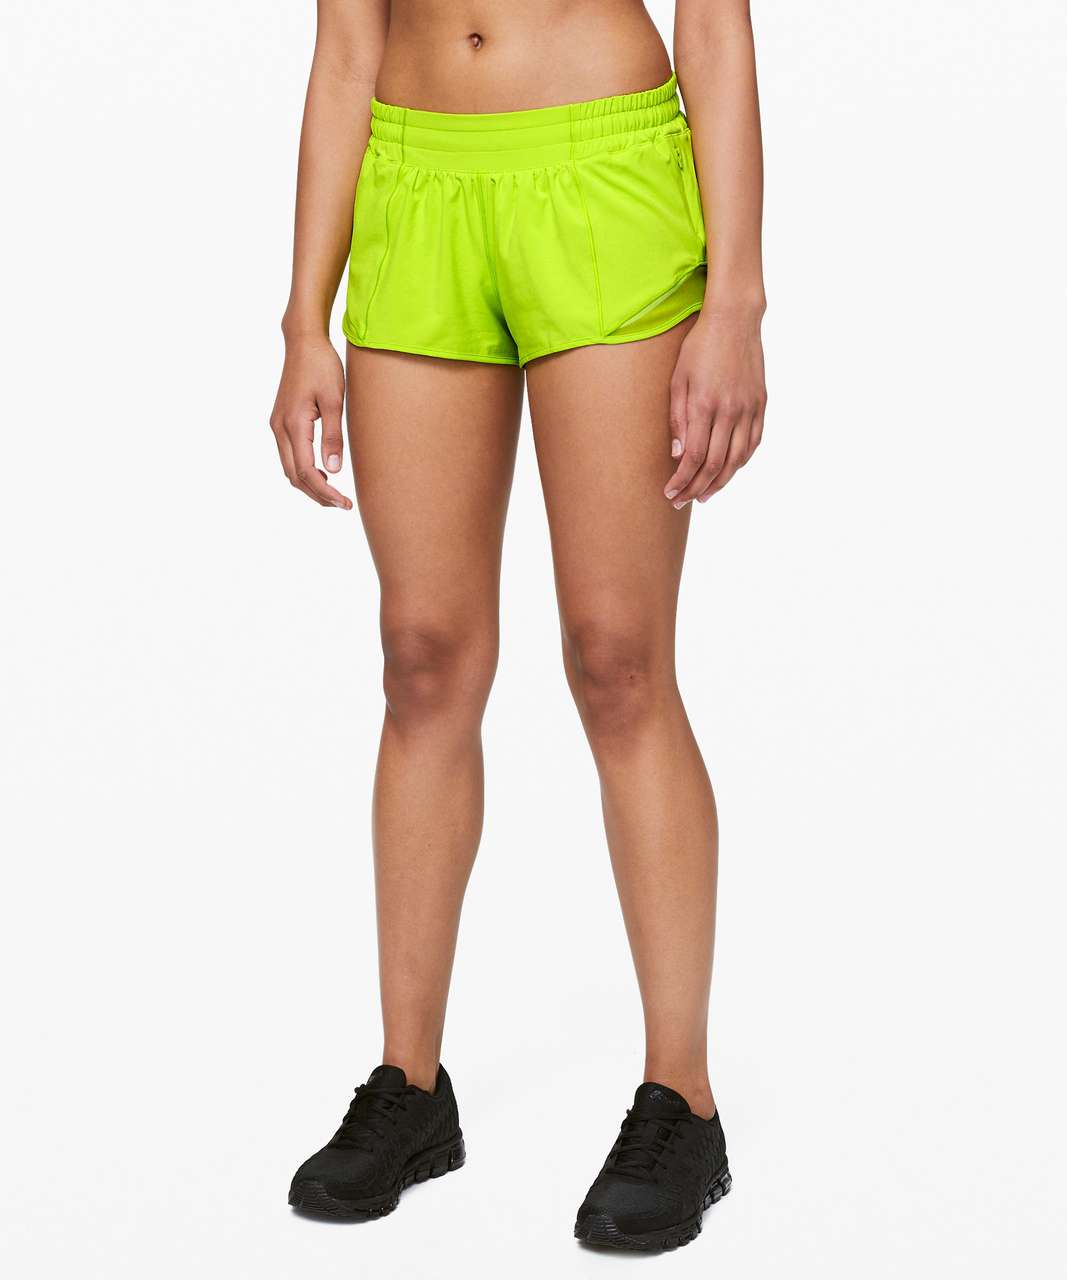 popular lululemon shorts